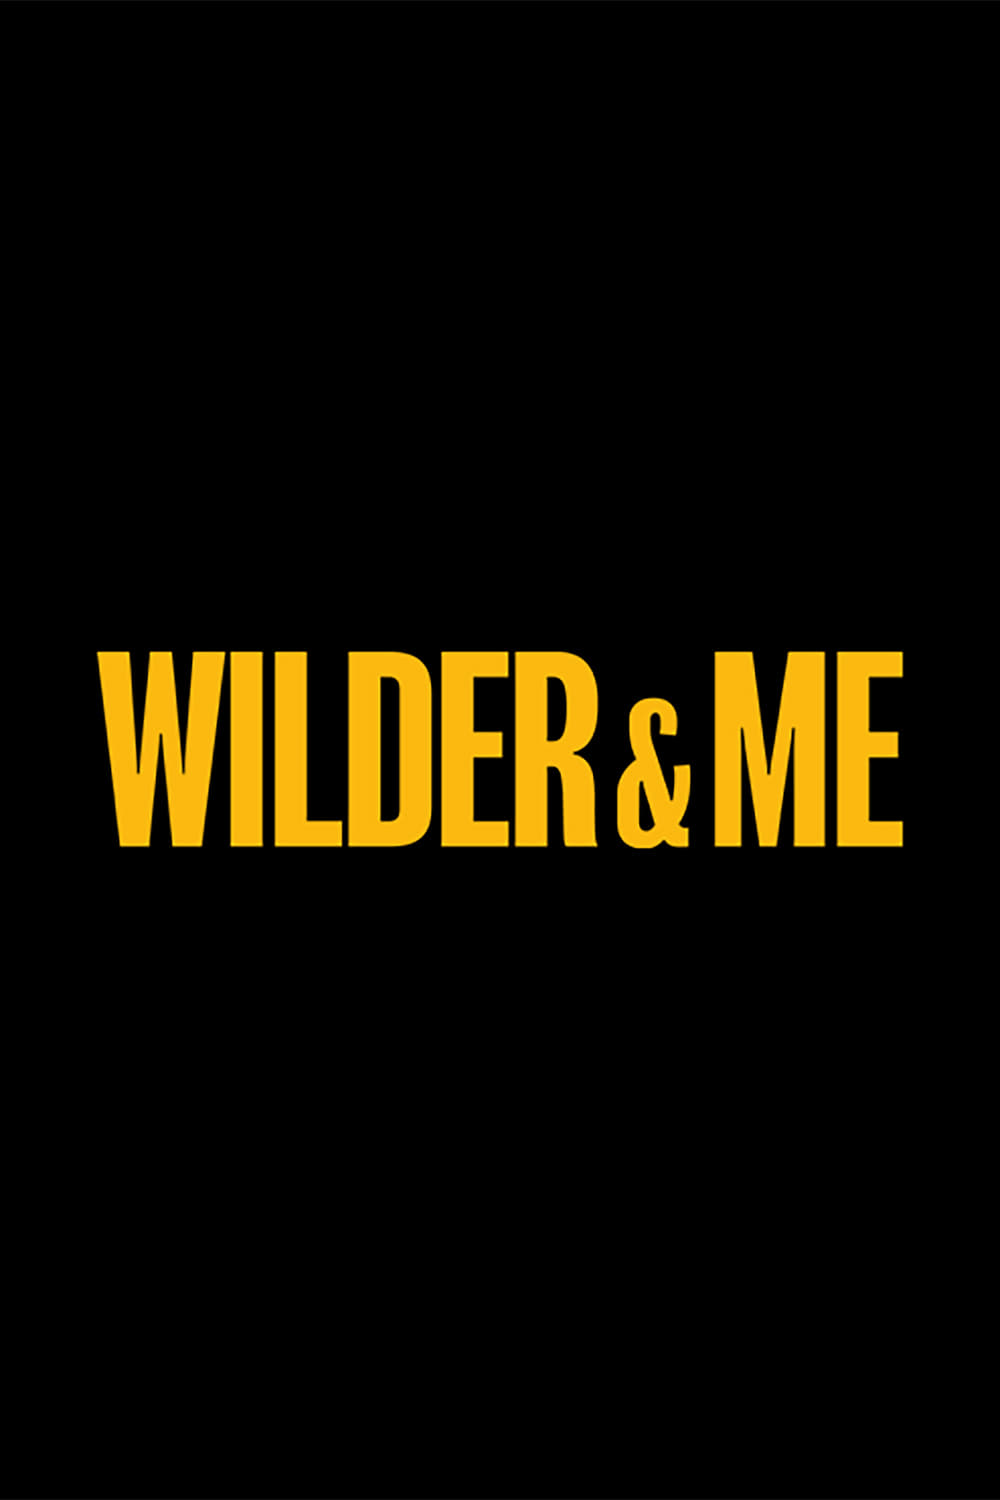 Wilder & Me